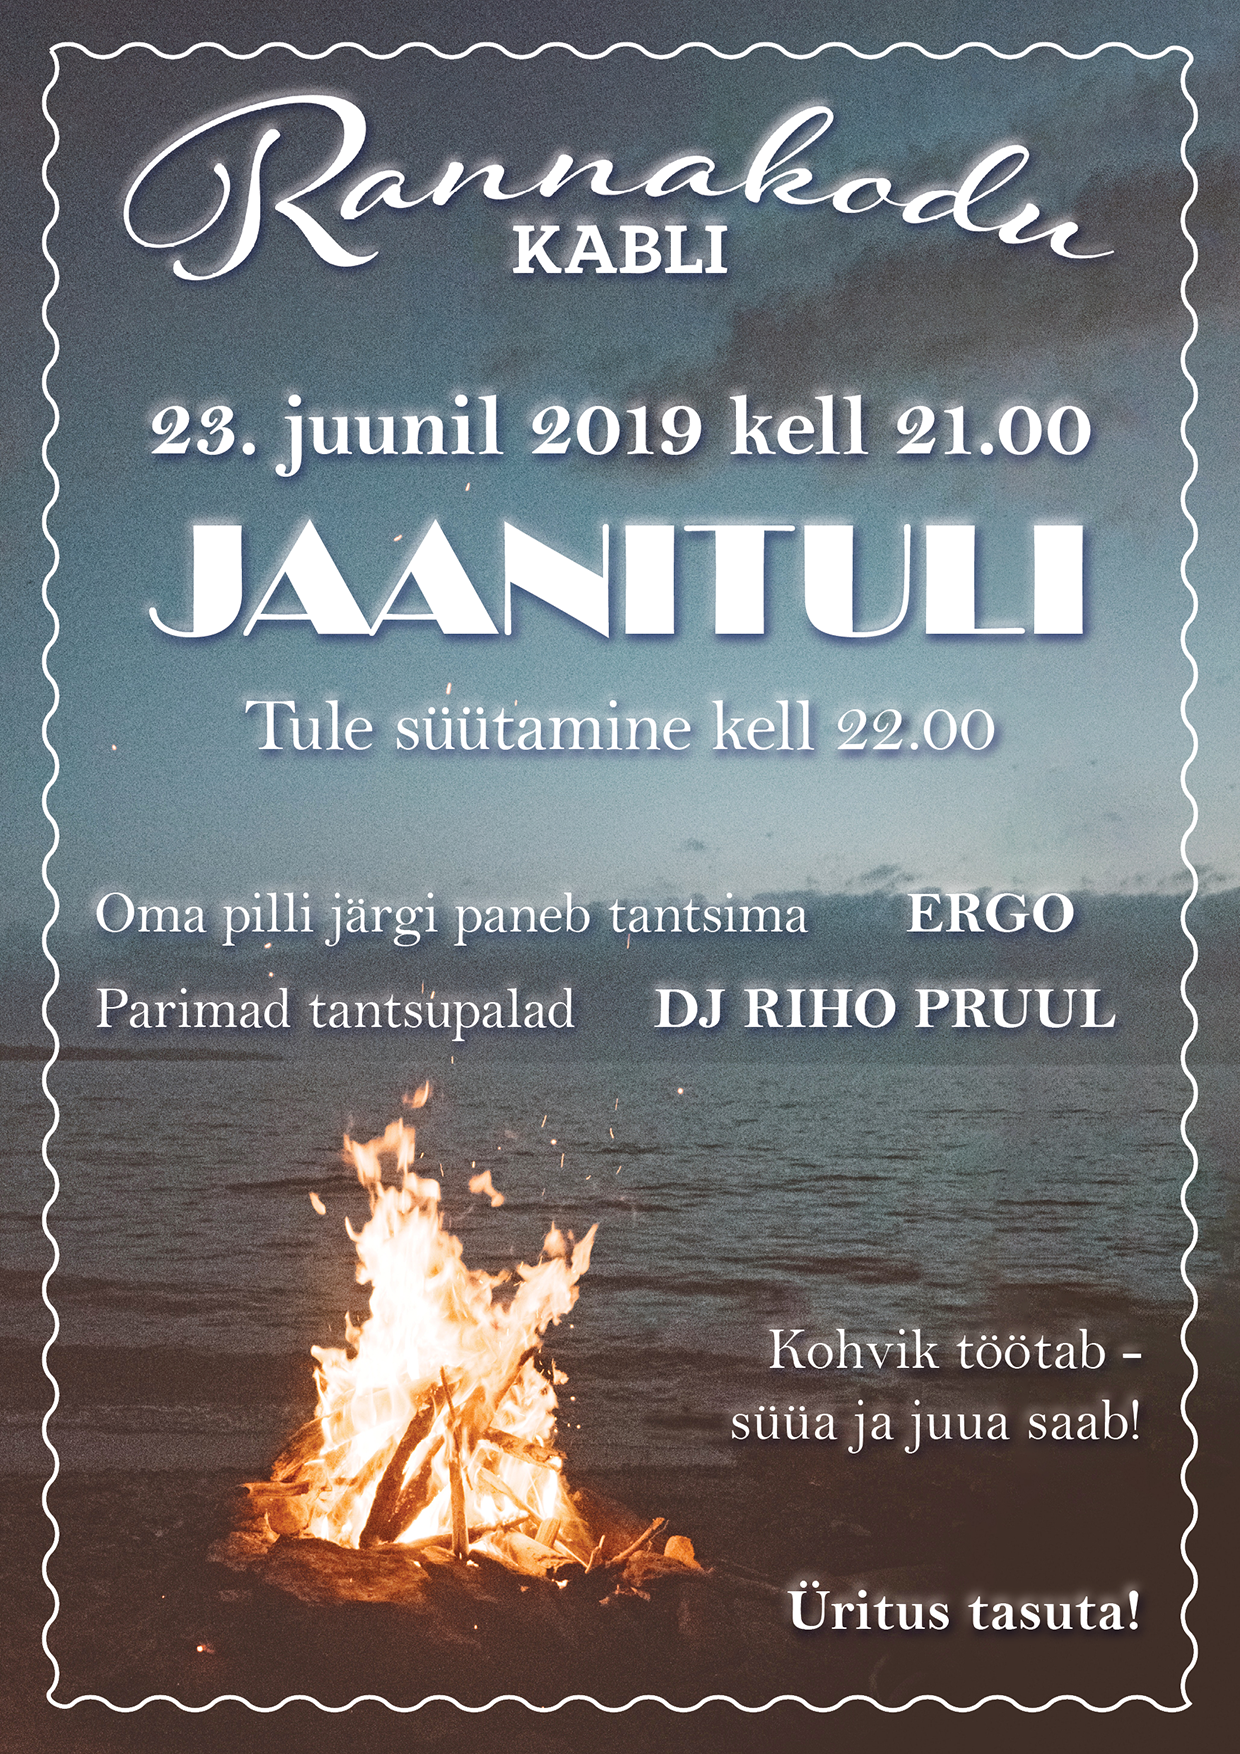 Rannakodu Jaanituli 23. juuni 2019